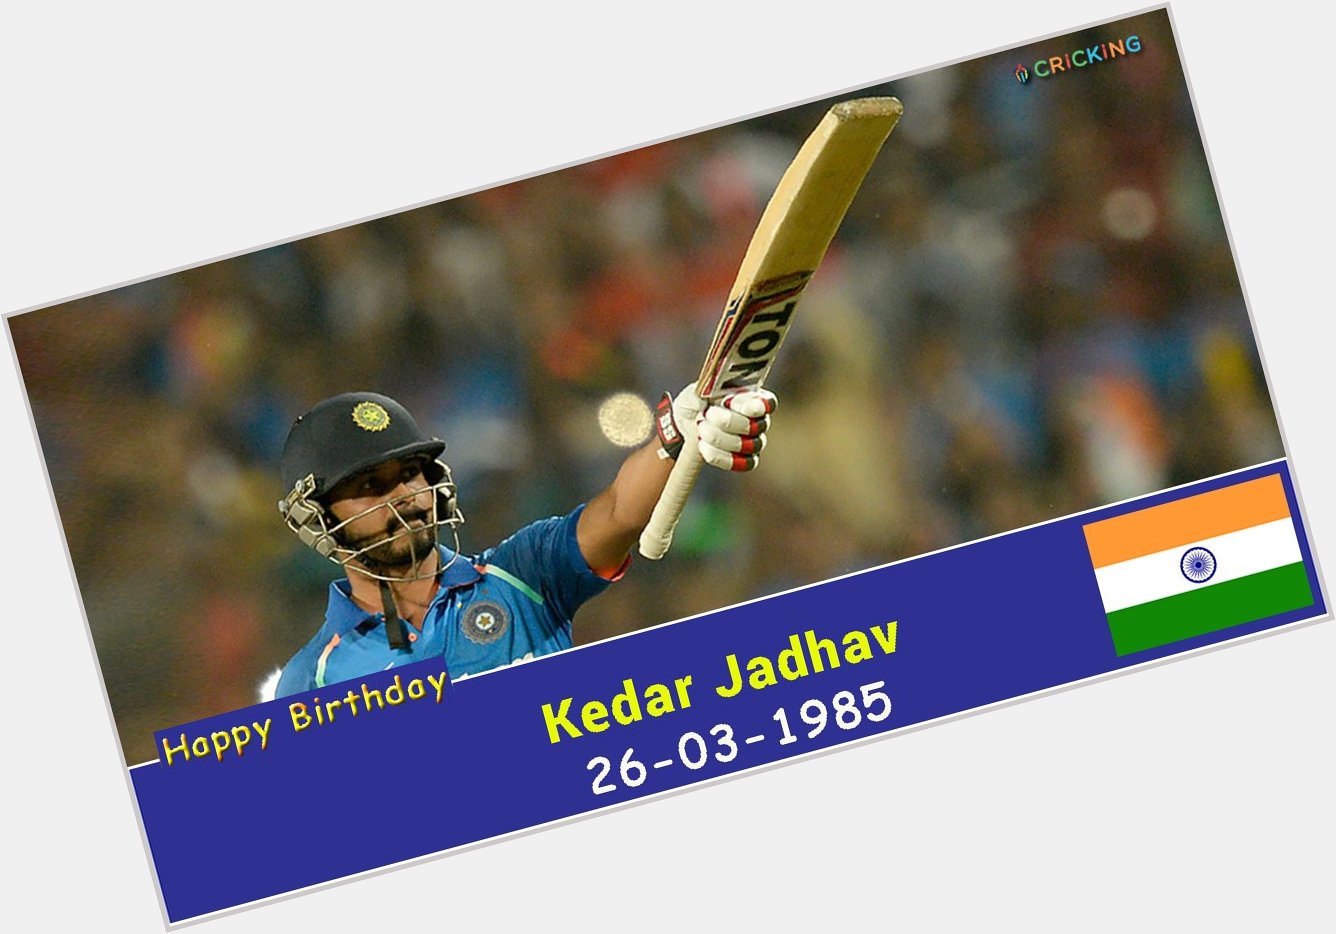 Happy Birthday Kedar Jadhav 